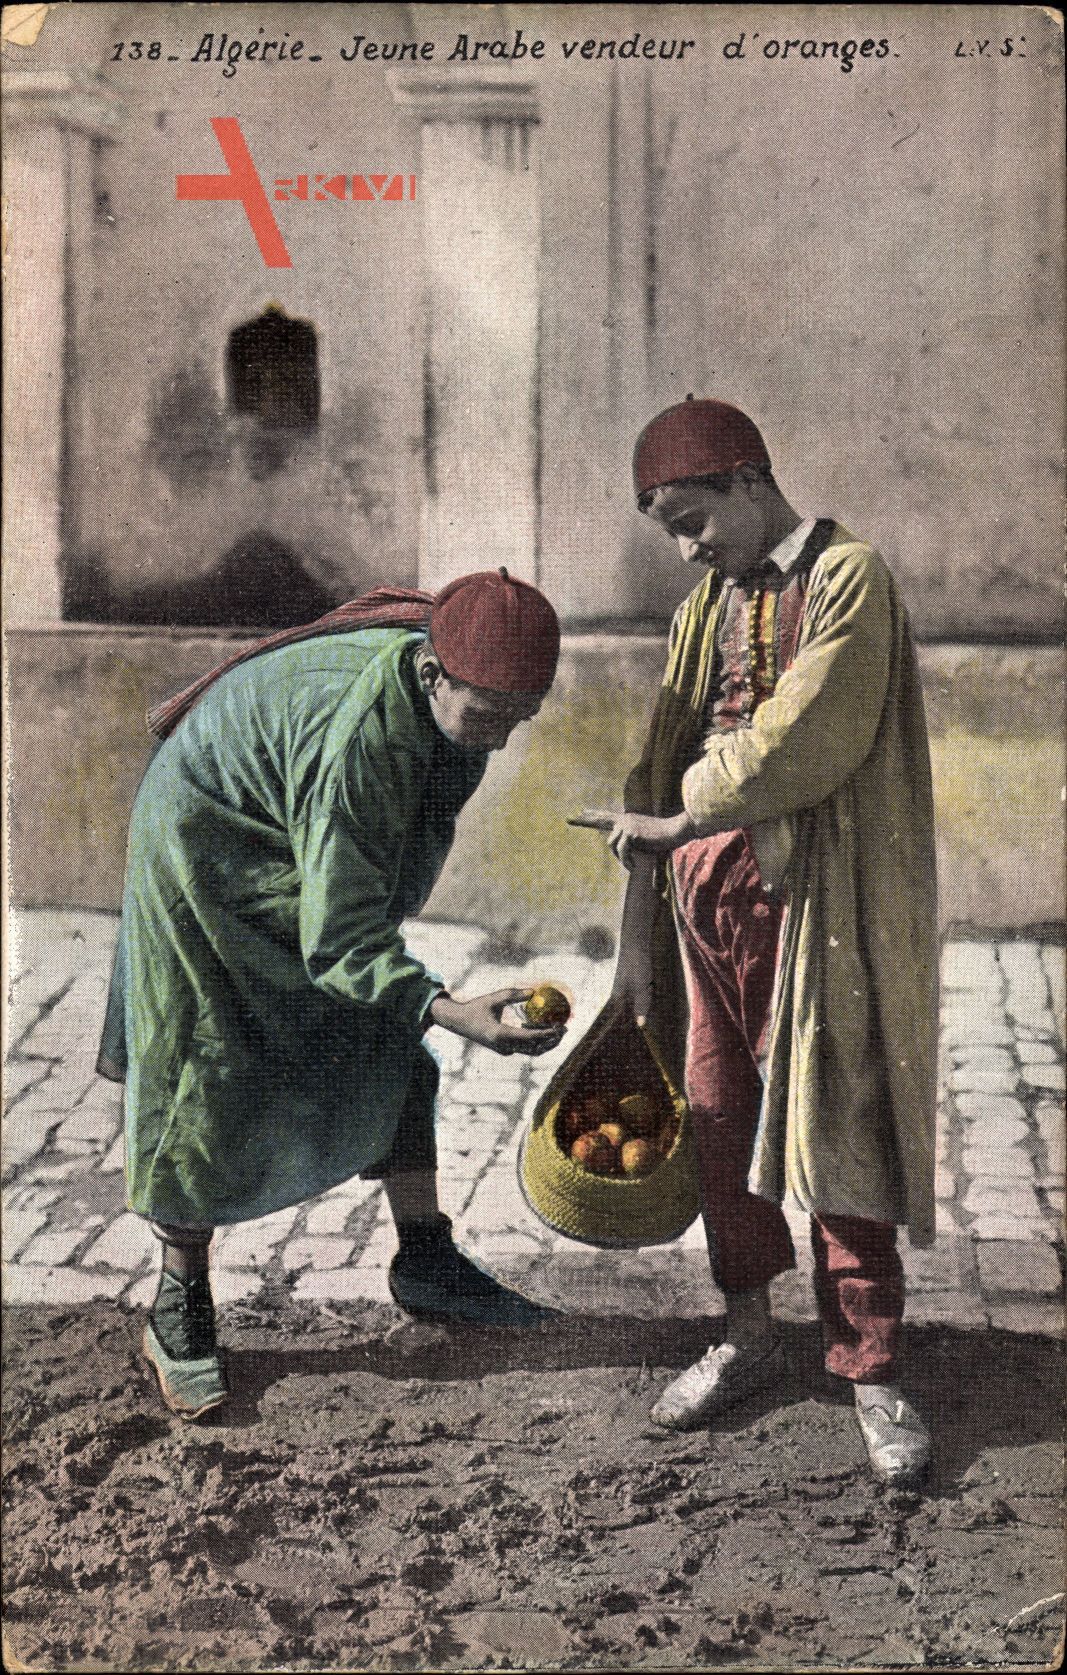 Algerien, Jeune Arabe vendeur doranges, kleine Jungen, Händler